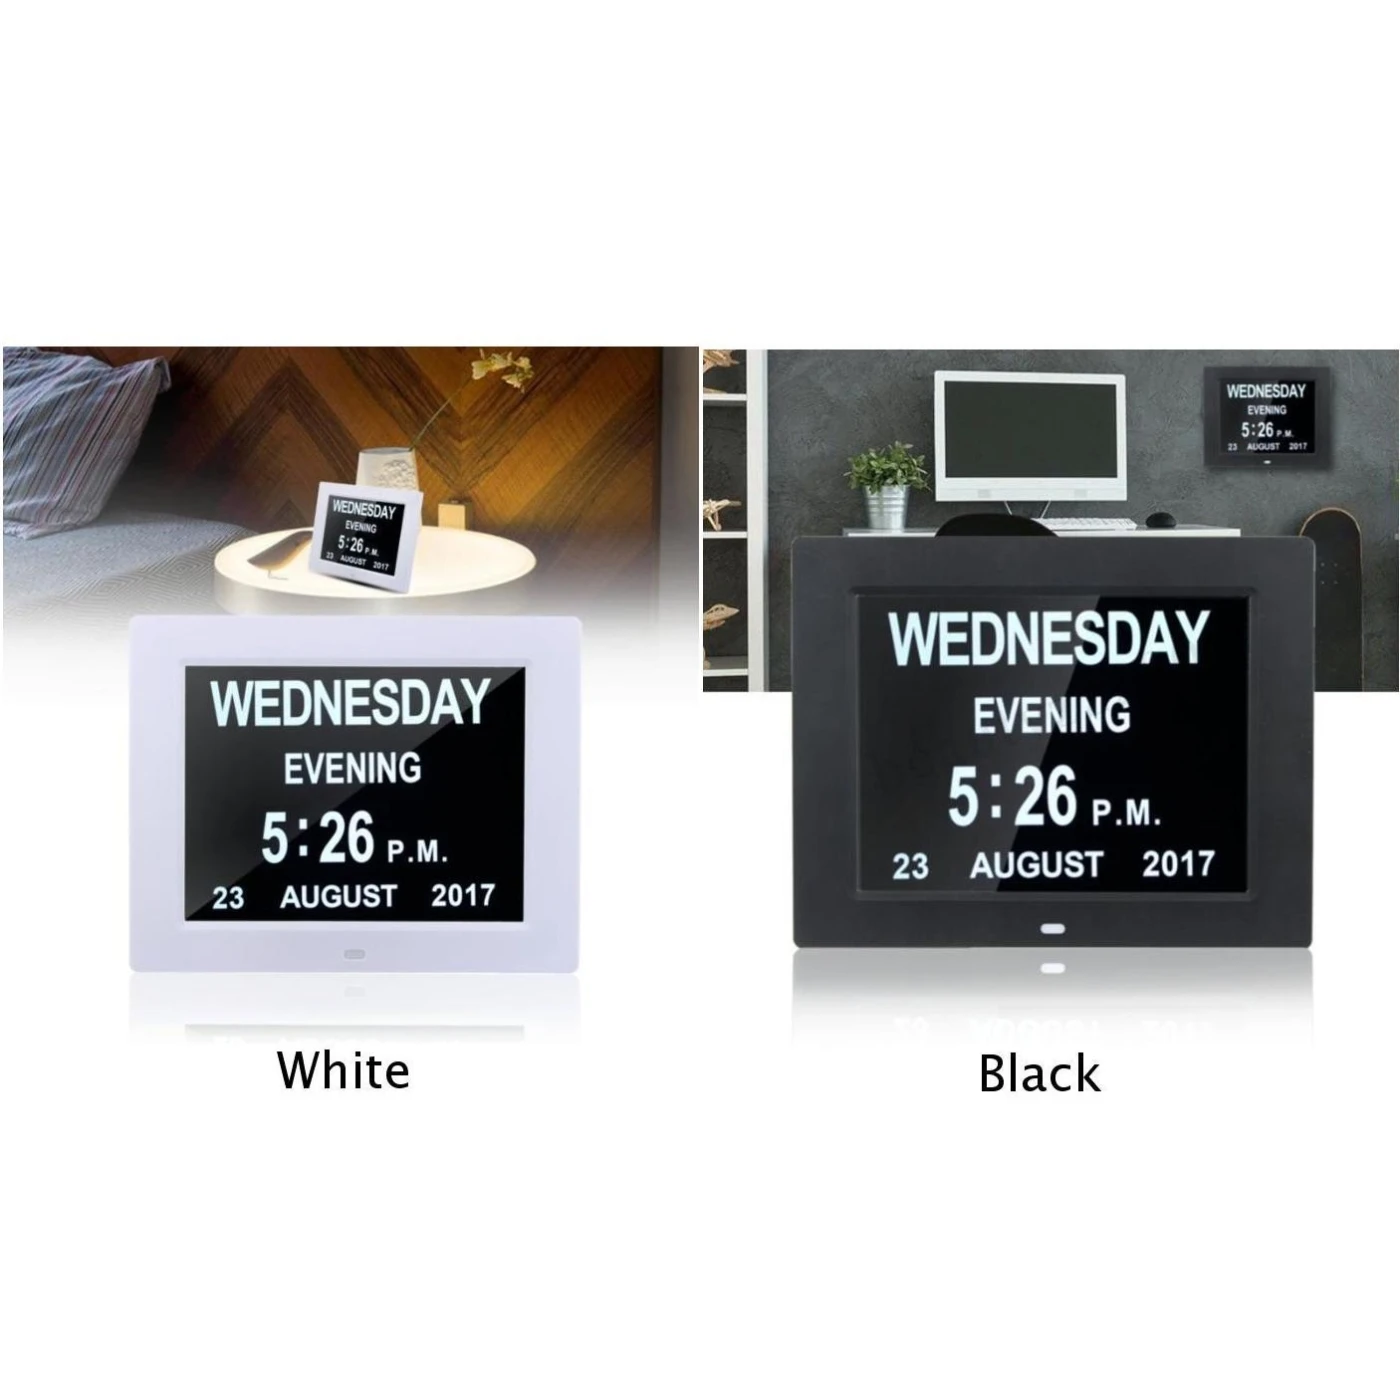 8 дюймов TFT большой светодиодный экран цифровой электронный будильник машина настенный календарь время День Неделя год дисплей 8 языков часы DC 5 В